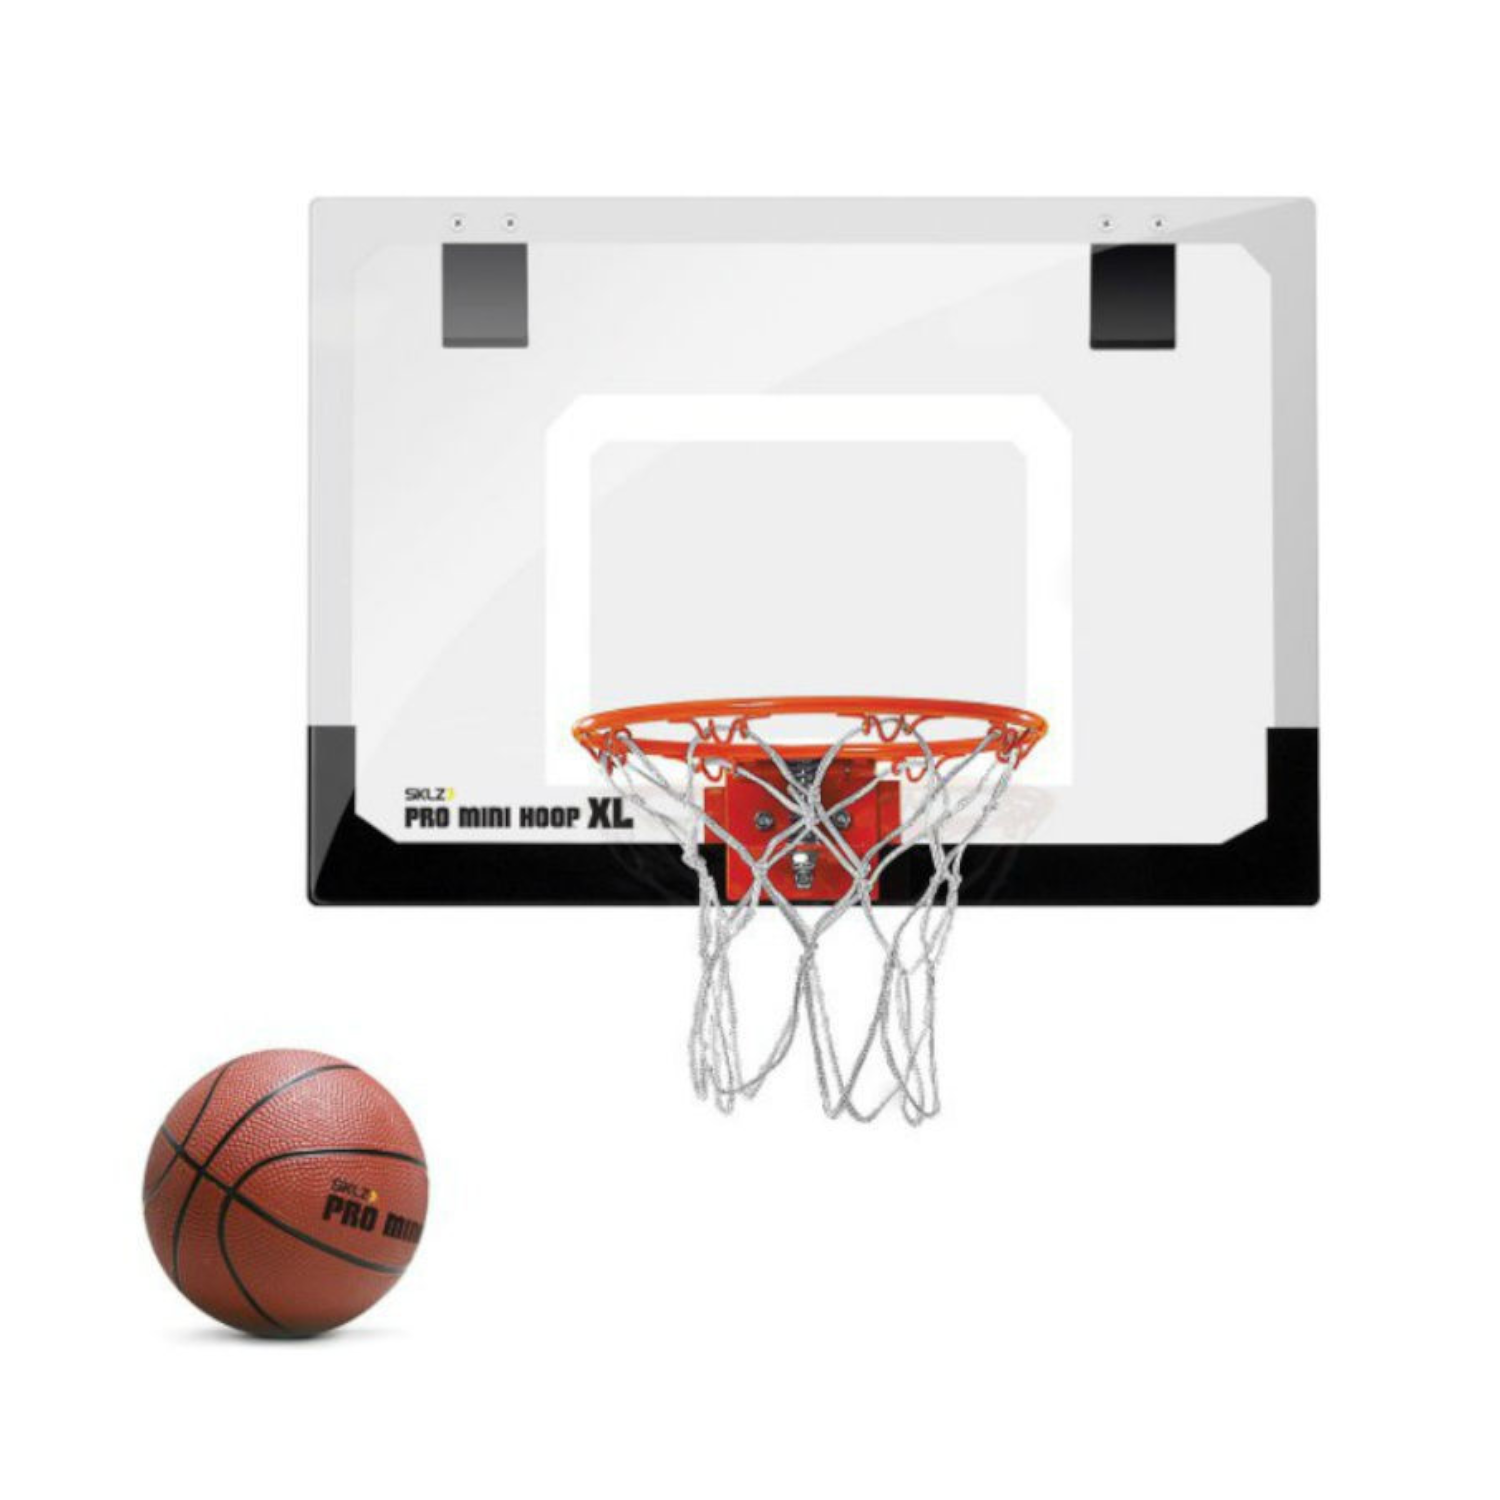 Игровой набор SKLZ баскетбольный Pro Mini Hoop XL - фото 1